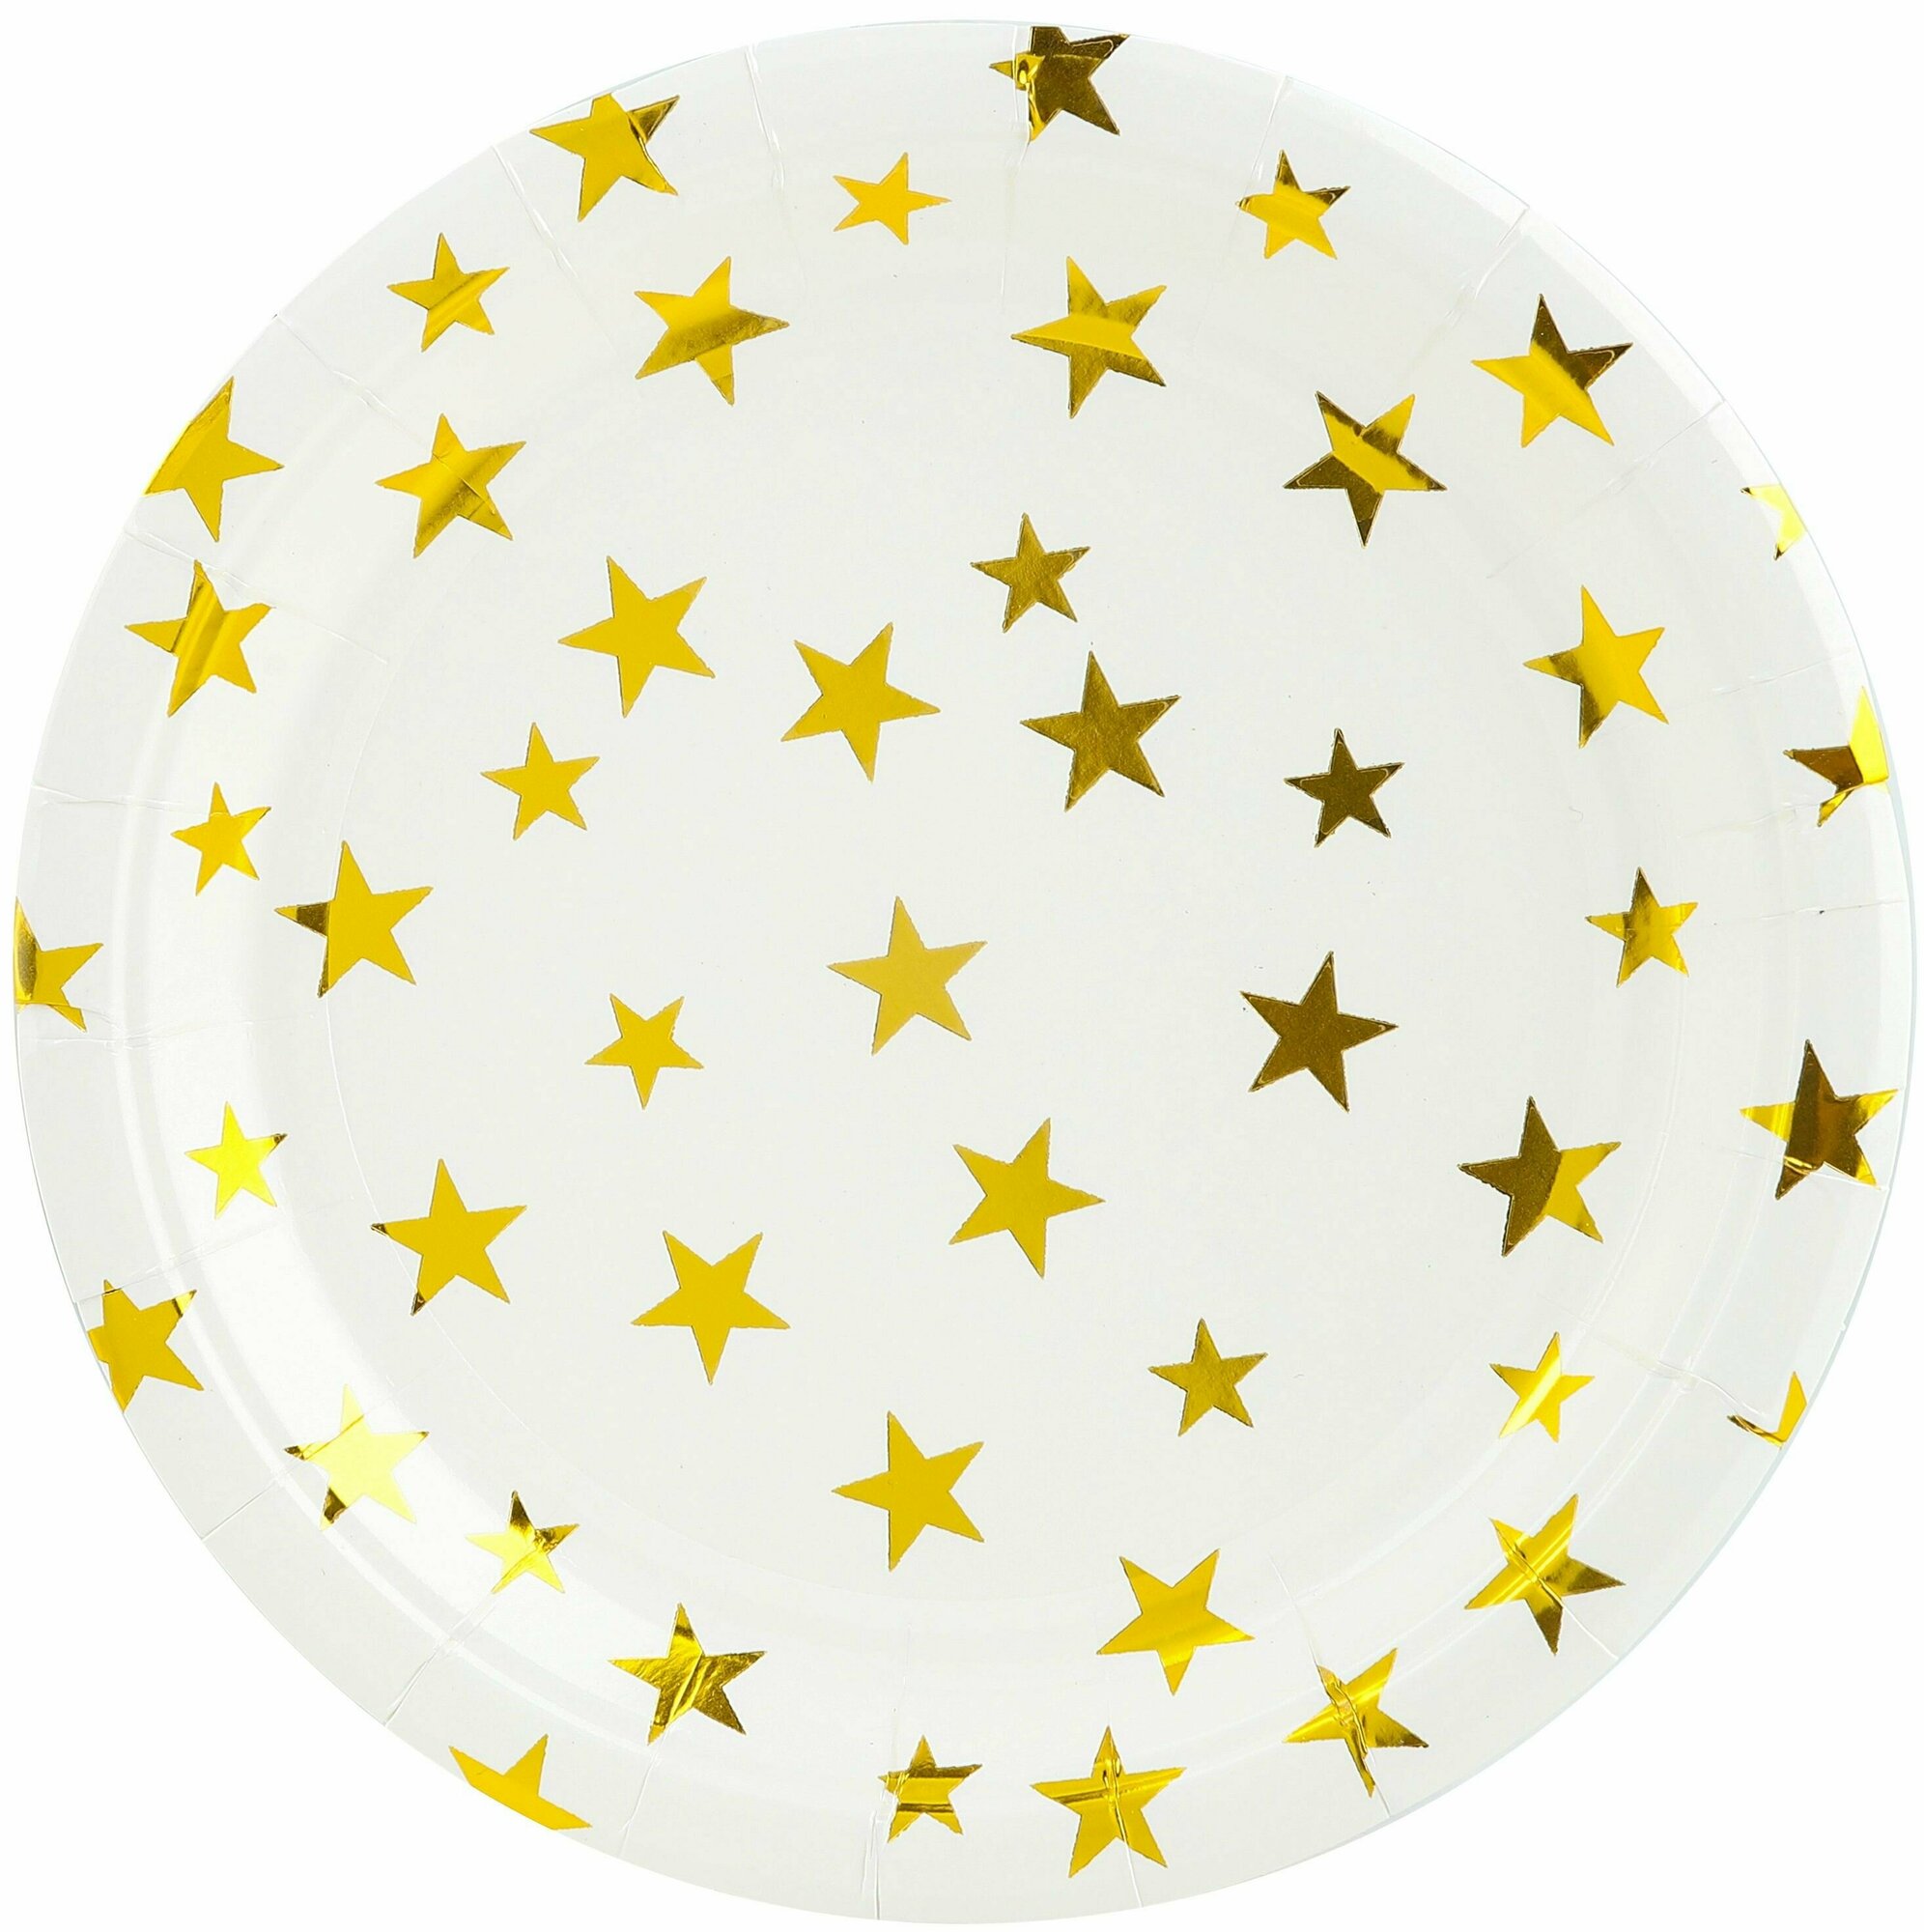 Тарелки одноразовые бумажные/Набор одноразовых бумажных тарелок для праздника (9'/23 см) Золотые звезды, Белый/Золото, Металлик, 6 шт.